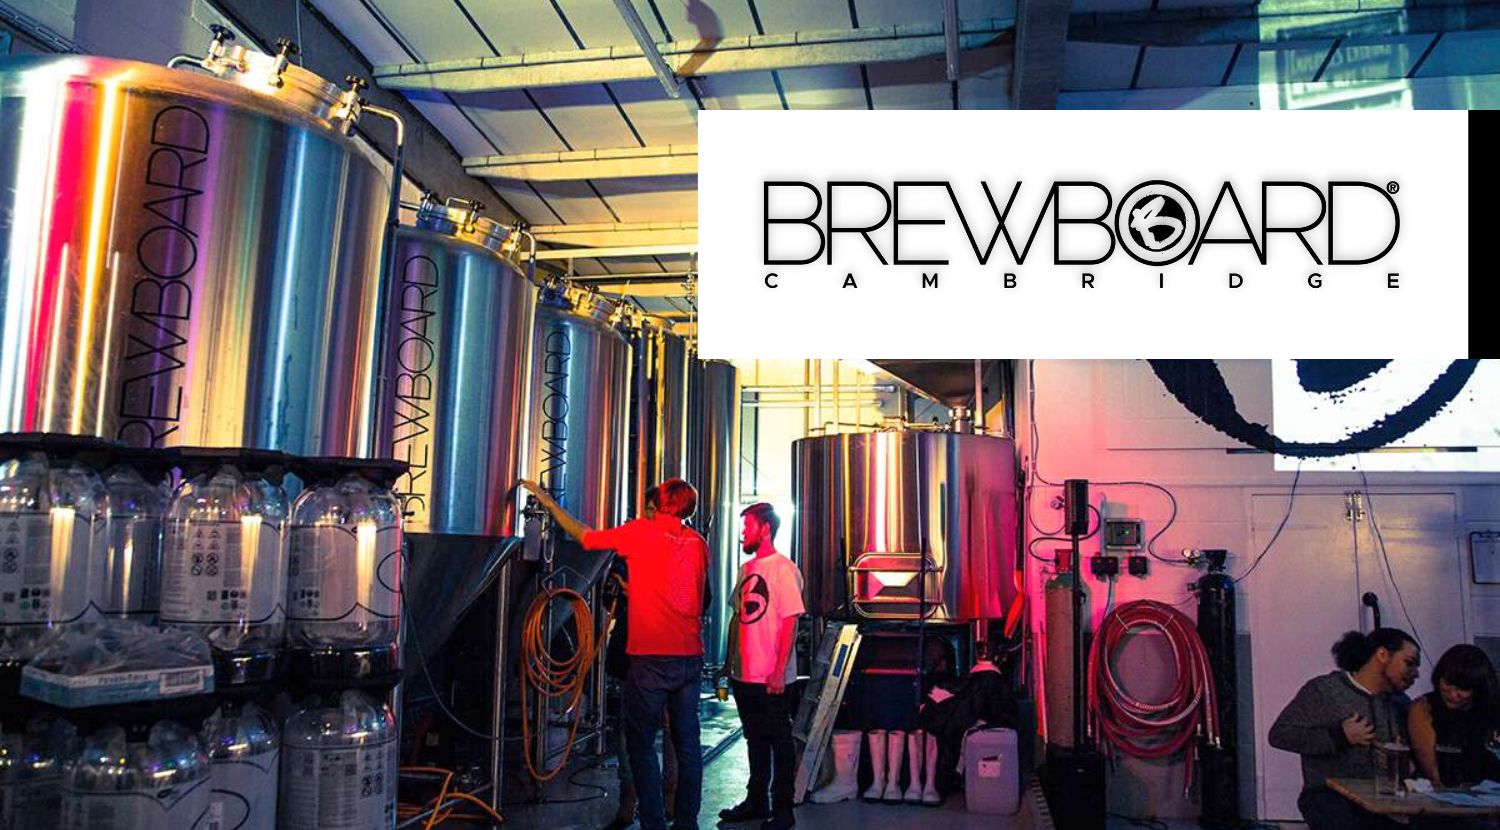 BrewBoard Brewery